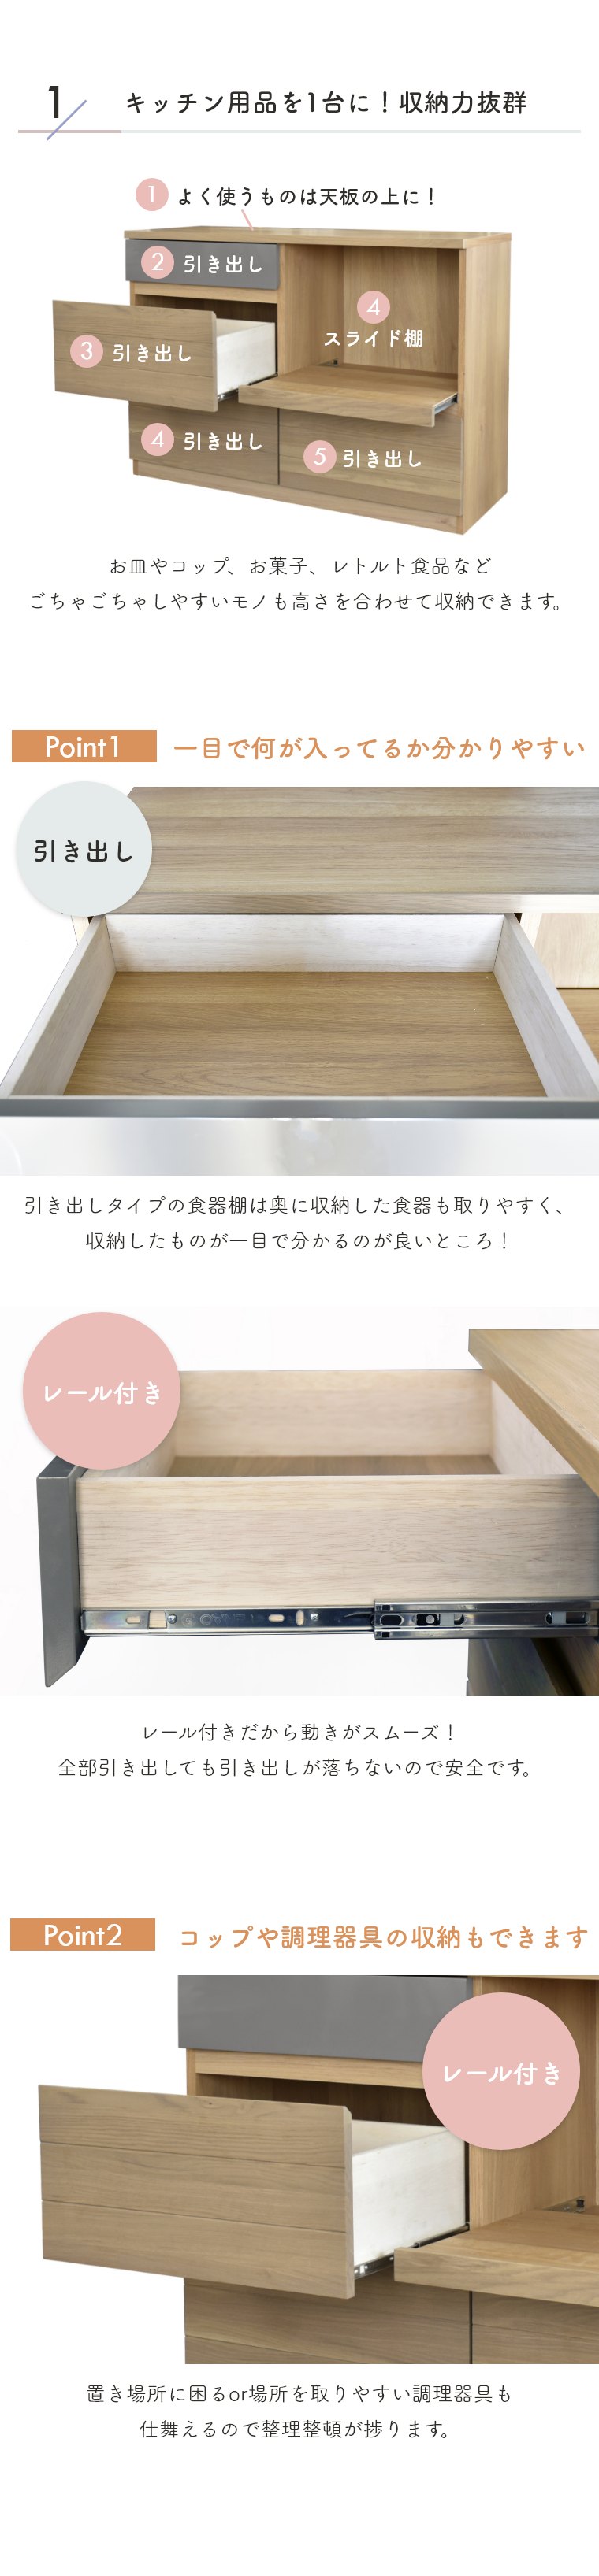 キッチンカウンター キッチン収納 オートム 幅120cm ガルト 日本製 国産 木製